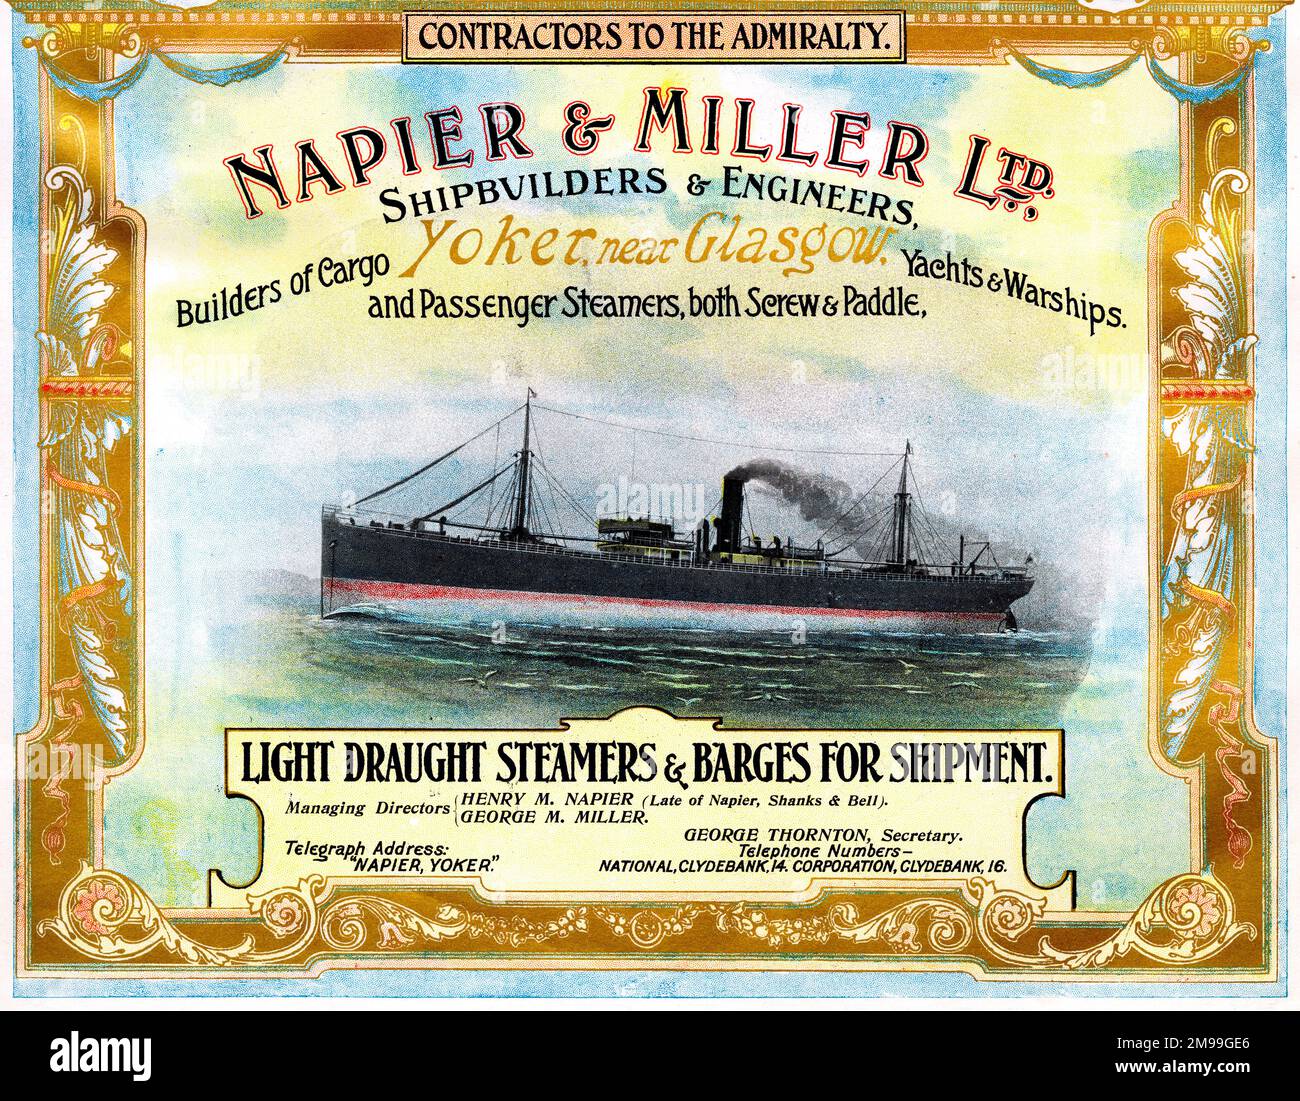 Pubblicità per Napier & Miller Ltd, Shipbuilders and Engineers, Yoker, vicino a Glasgow, Scozia. Foto Stock